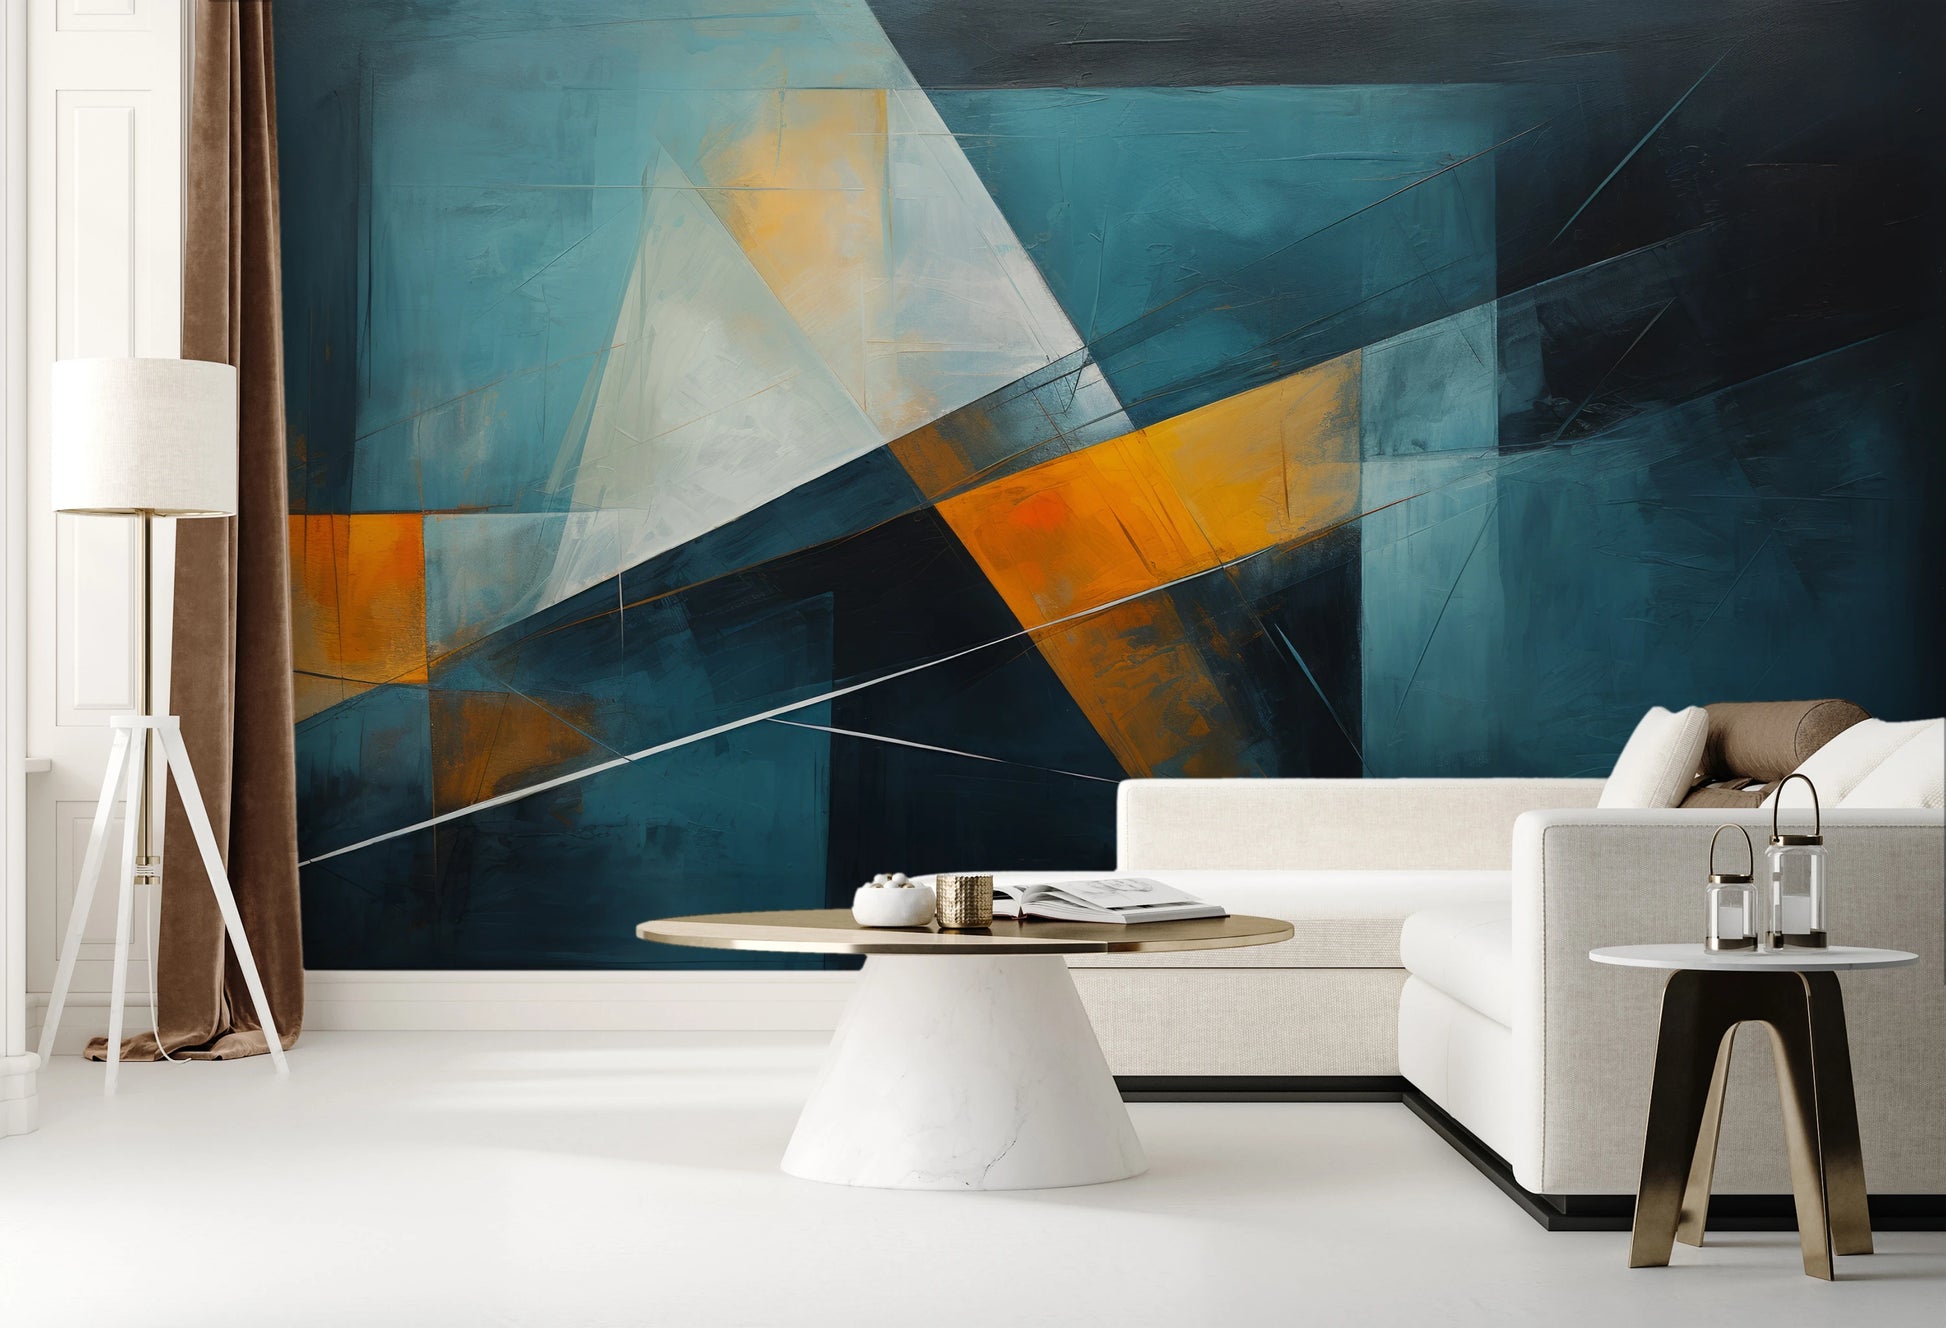 Fototapeta malowana o nazwie Abstract Depths pokazana w aranżacji wnętrza.